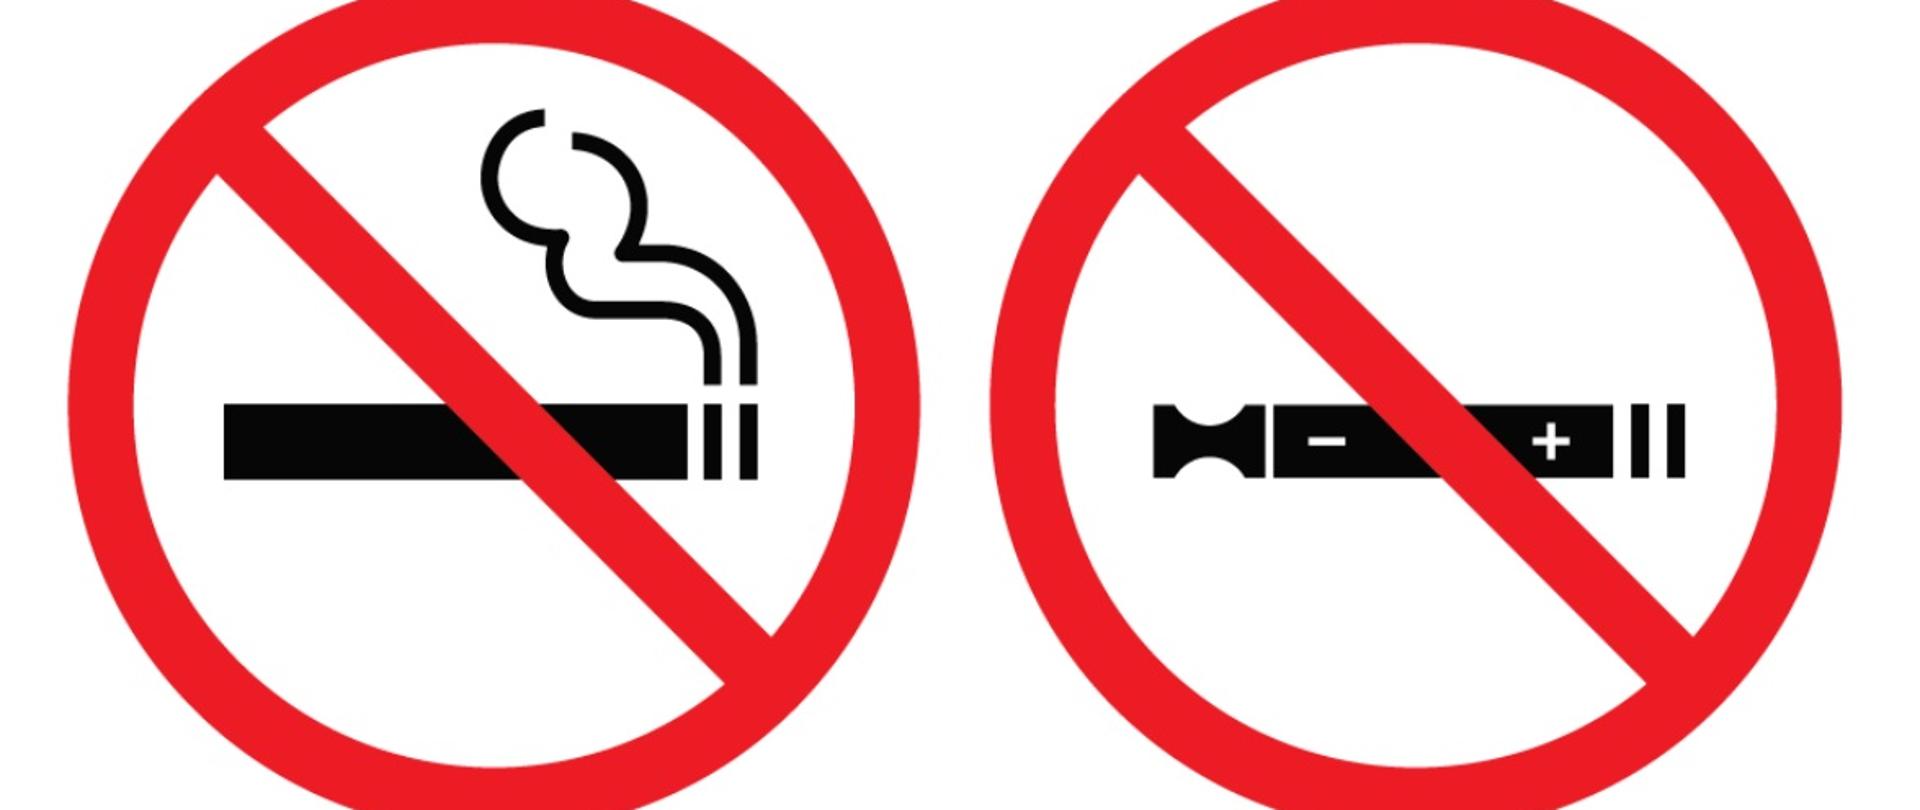 Wzór tabliczki informującej o zakazie palenia papierosów tradycyjnych i papierosów elektronicznych w miejscach publicznych zgodnie z ustawą z dnia 9 listopada 1995 r. o ochronie zdrowia przed następstwami używania tytoniu i wyrobów tytoniowych. Na tabliczce umieszczone są dwa oznaczenia — dla papierosów tradycyjnych i elektronicznych umiejscowionych na znakach zakazu.